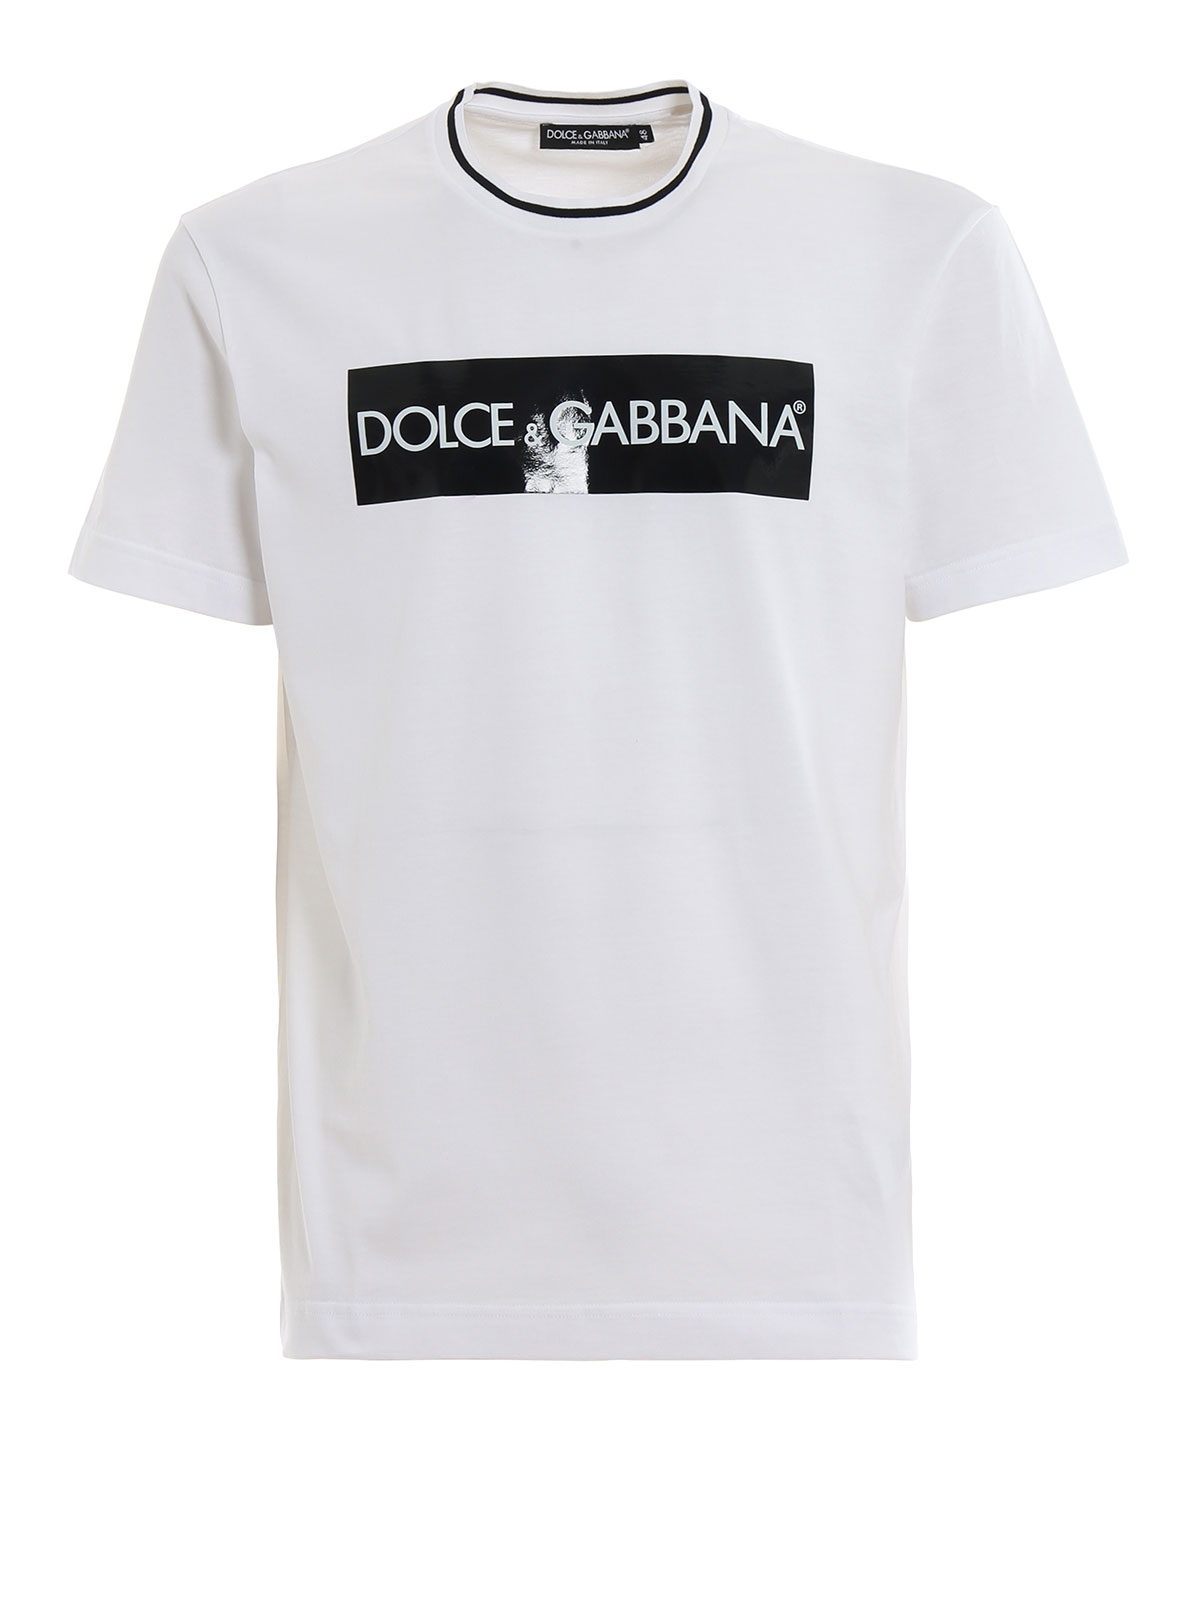 Arriba 47+ imagen dolce and gabbana shirt cheap